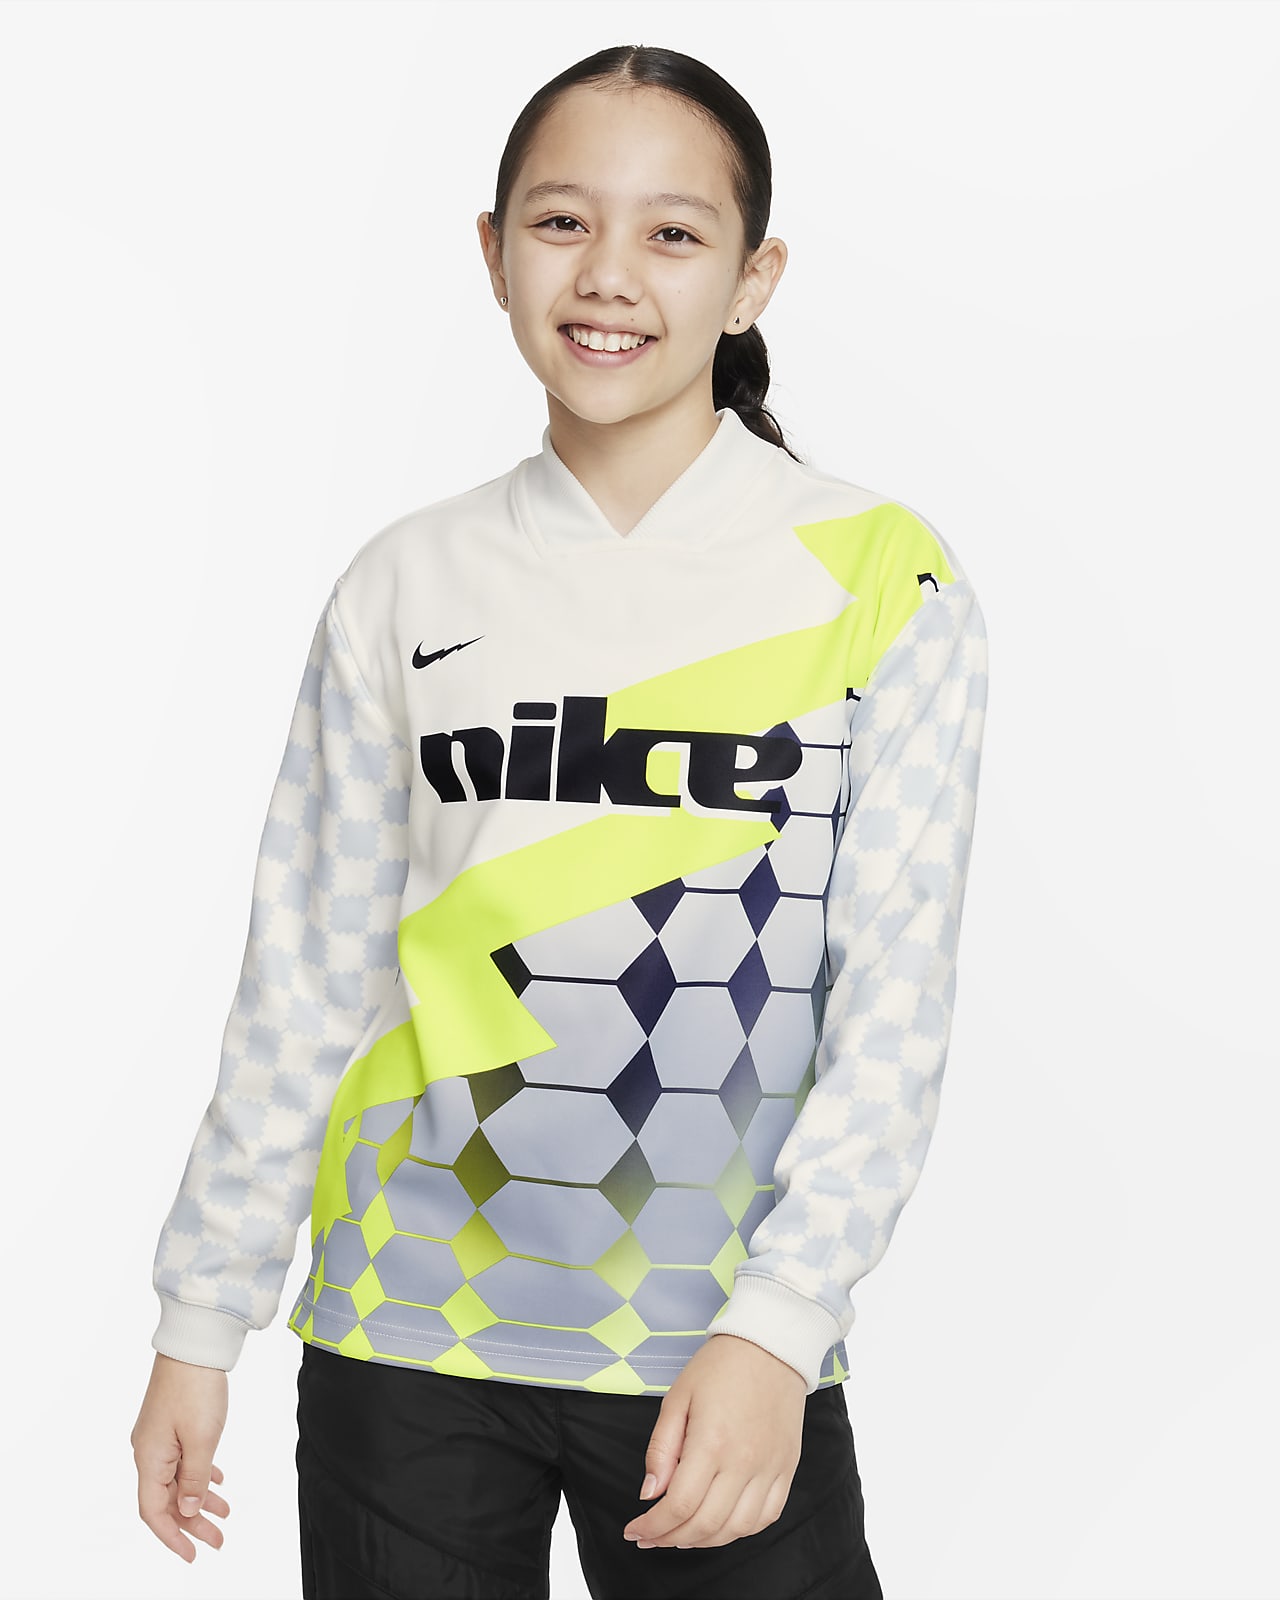 Nike Dri-FIT Big Kids' Soccer Jersey